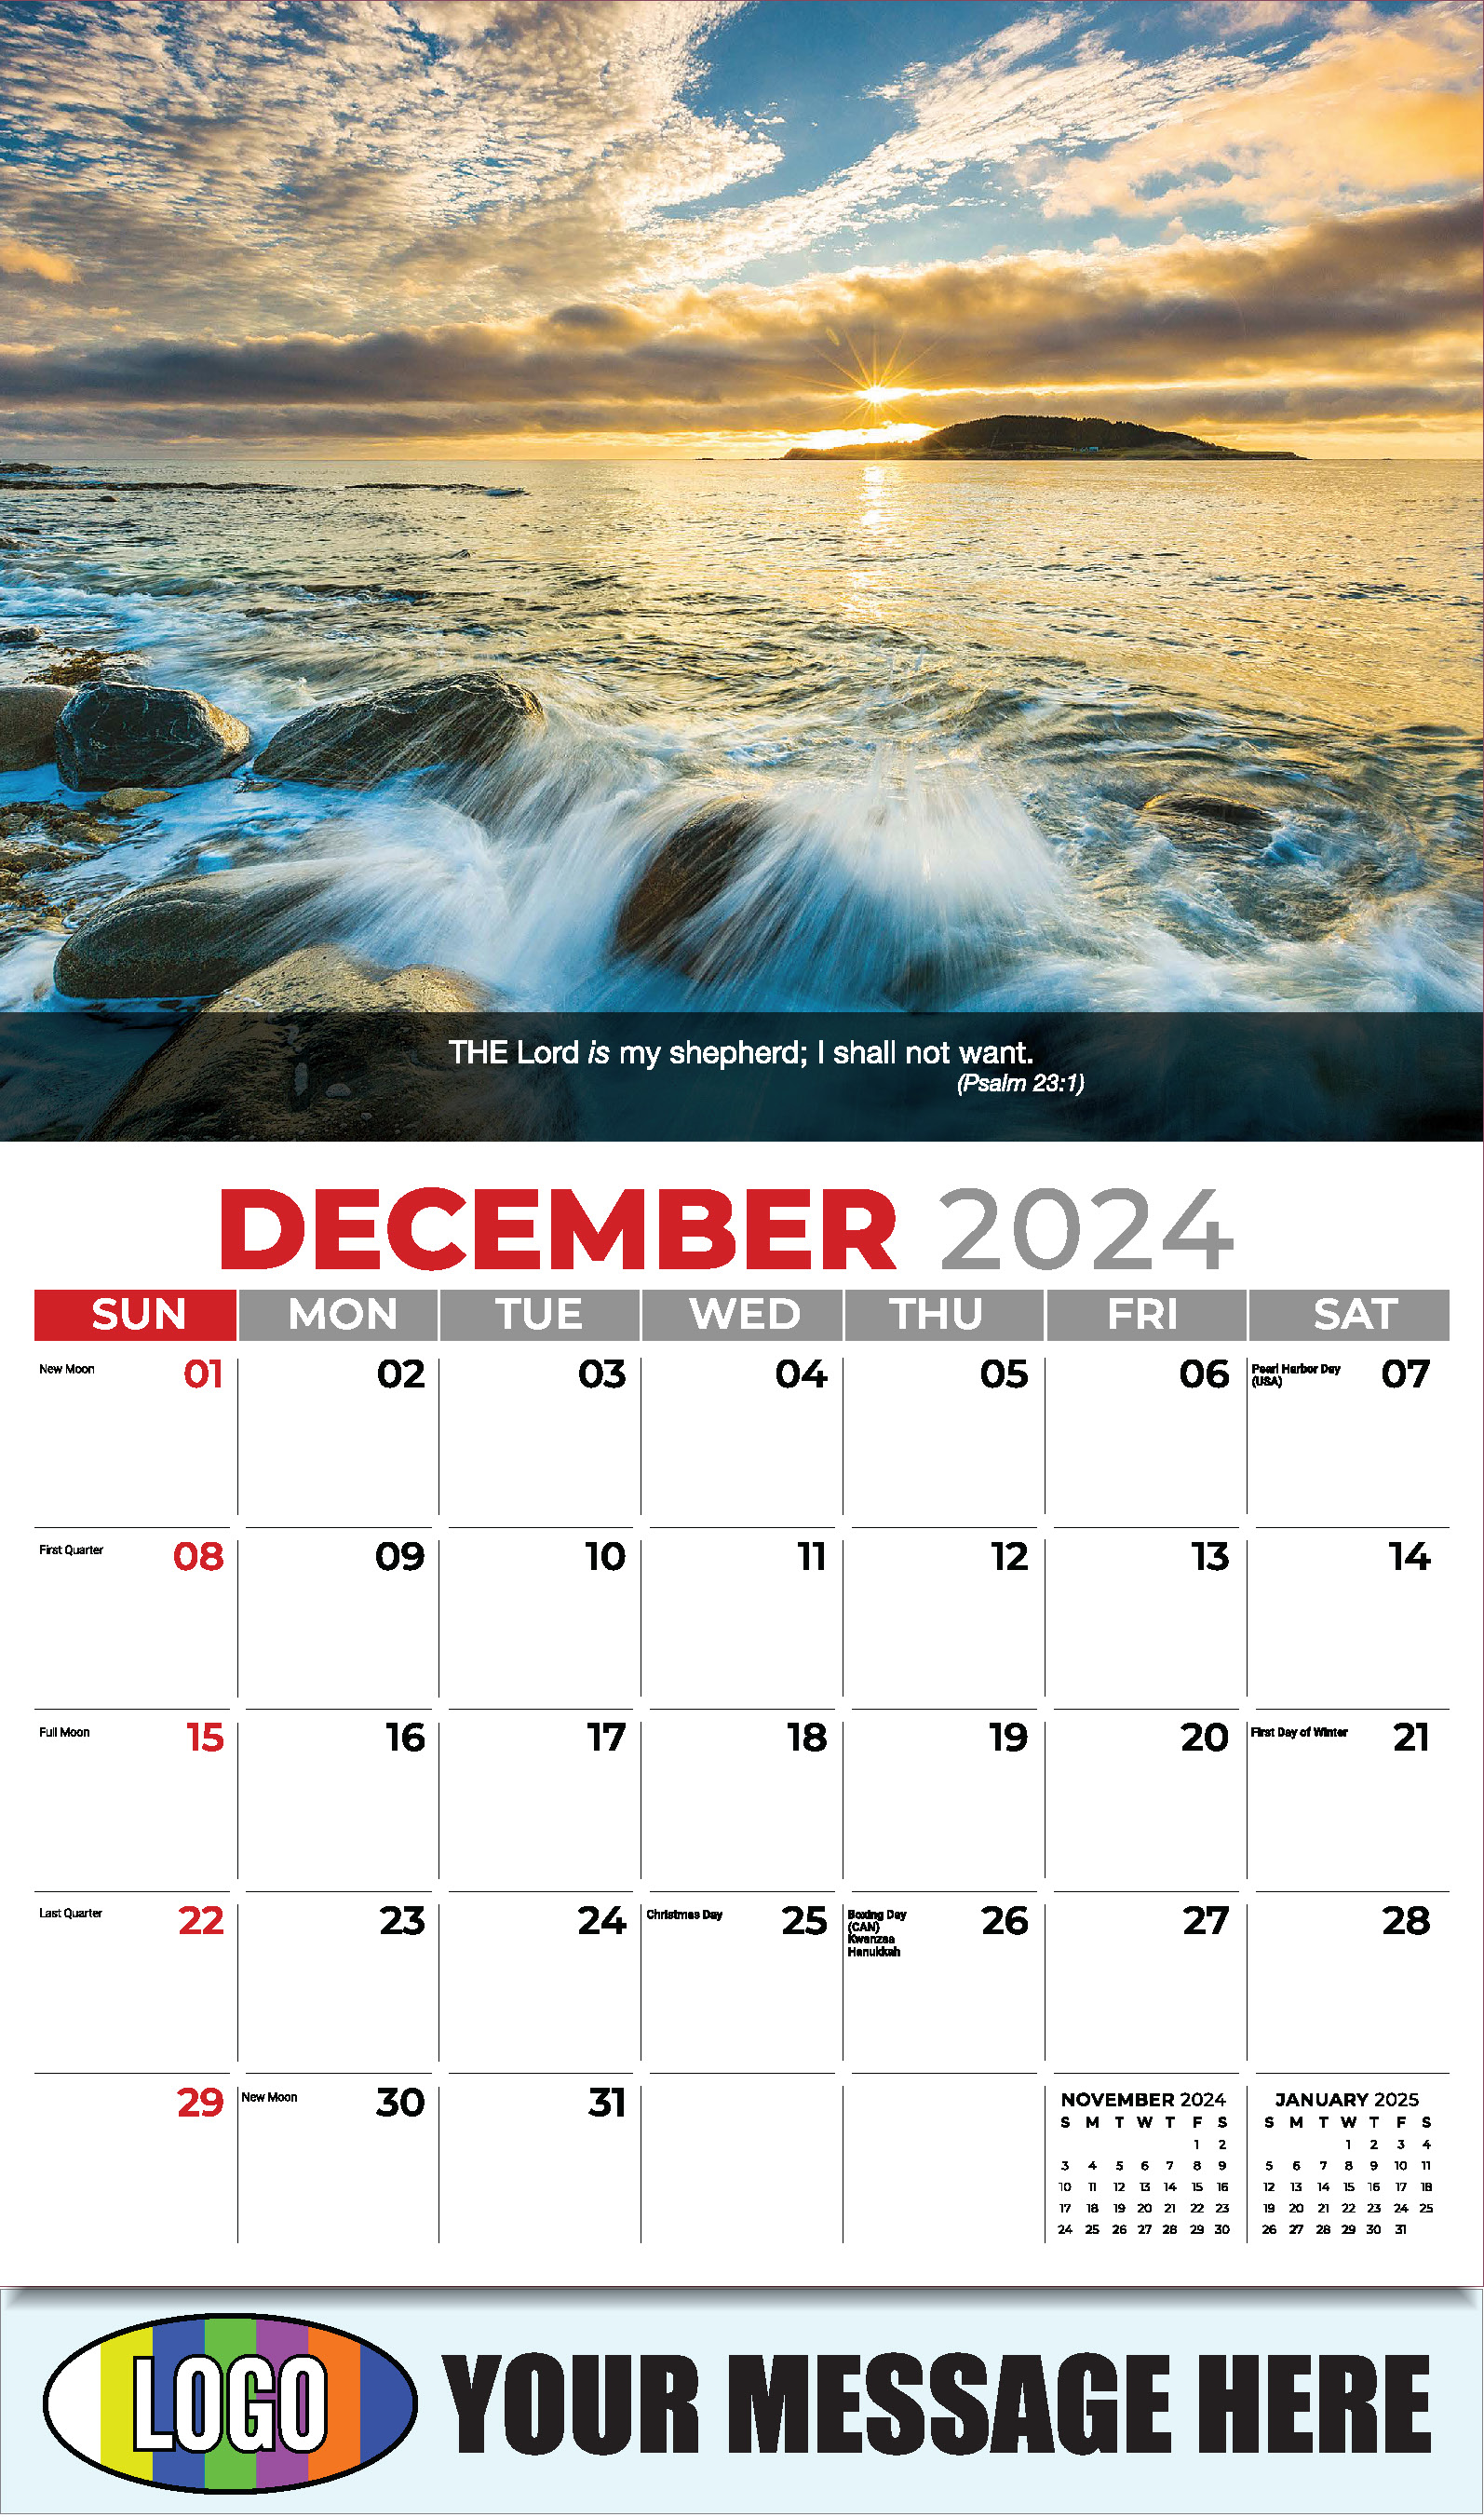 Faith Passages 2025 Christian Business Advertising Calendar - December_a